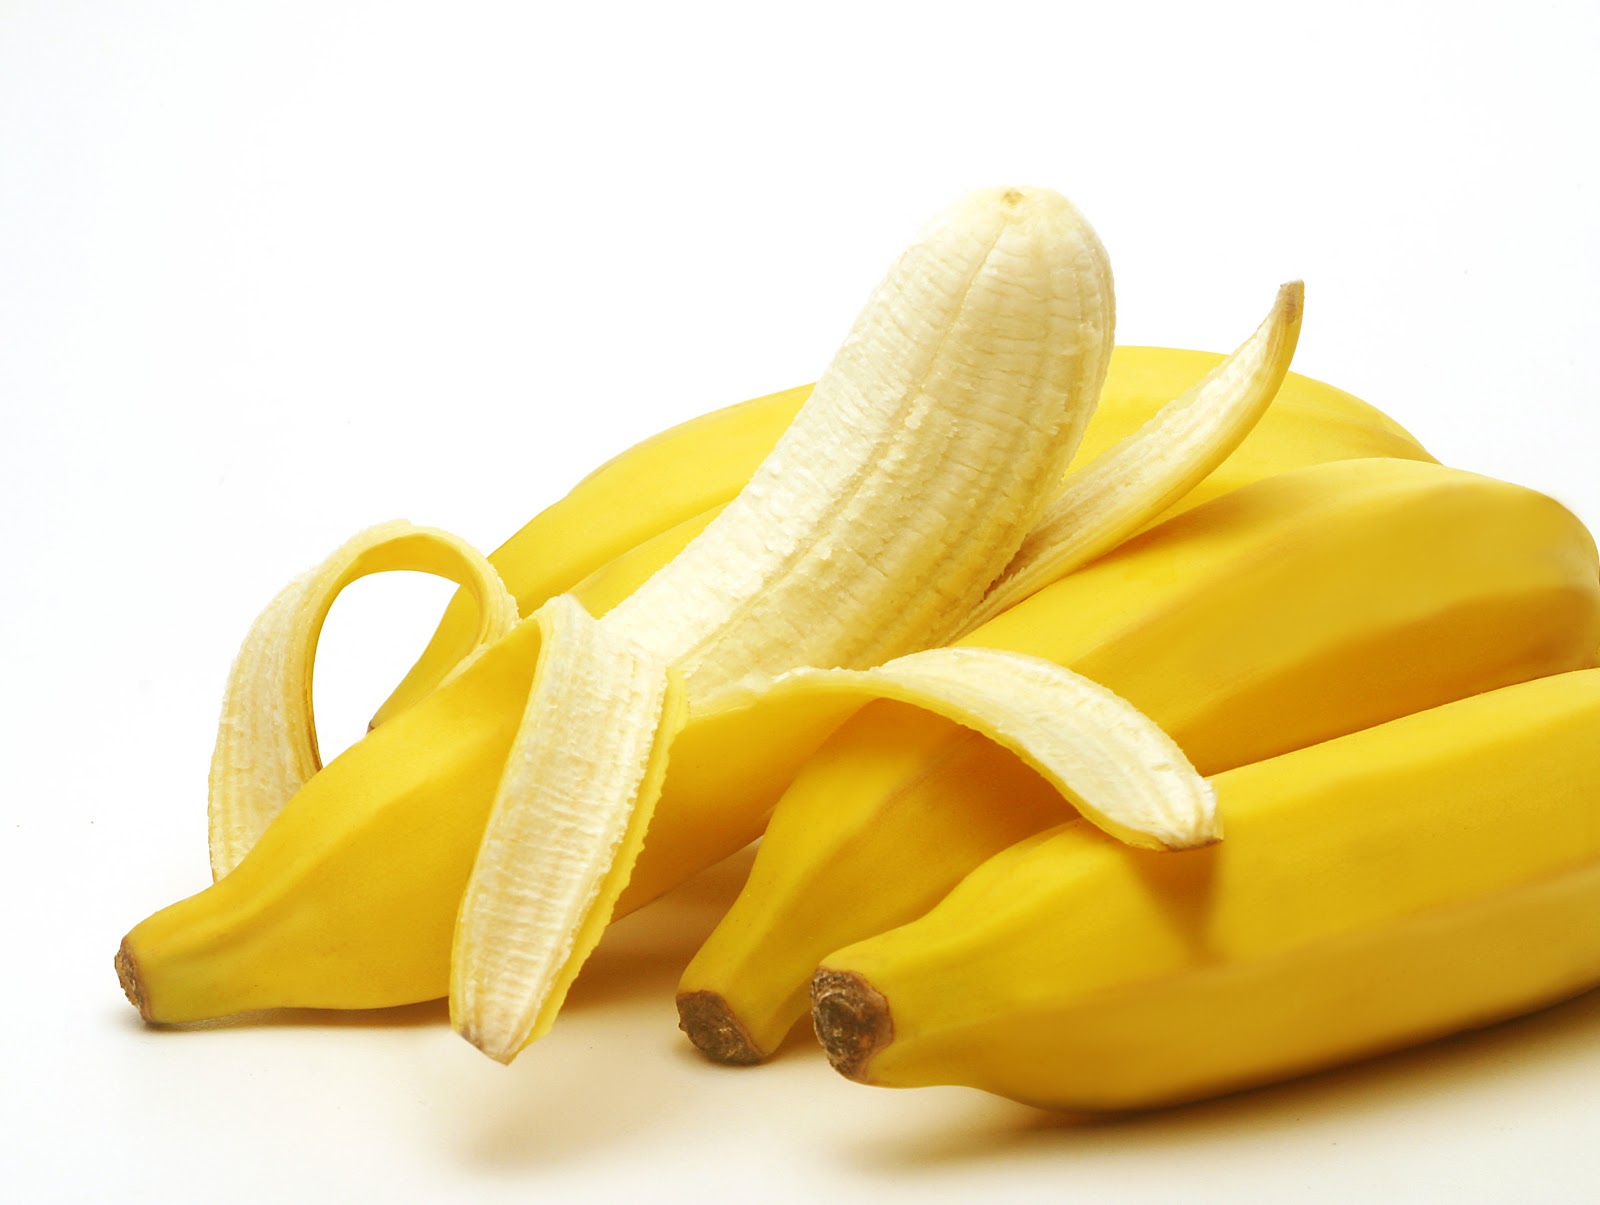 Θα πούμε τη μπανάνα μπανανίτσα;